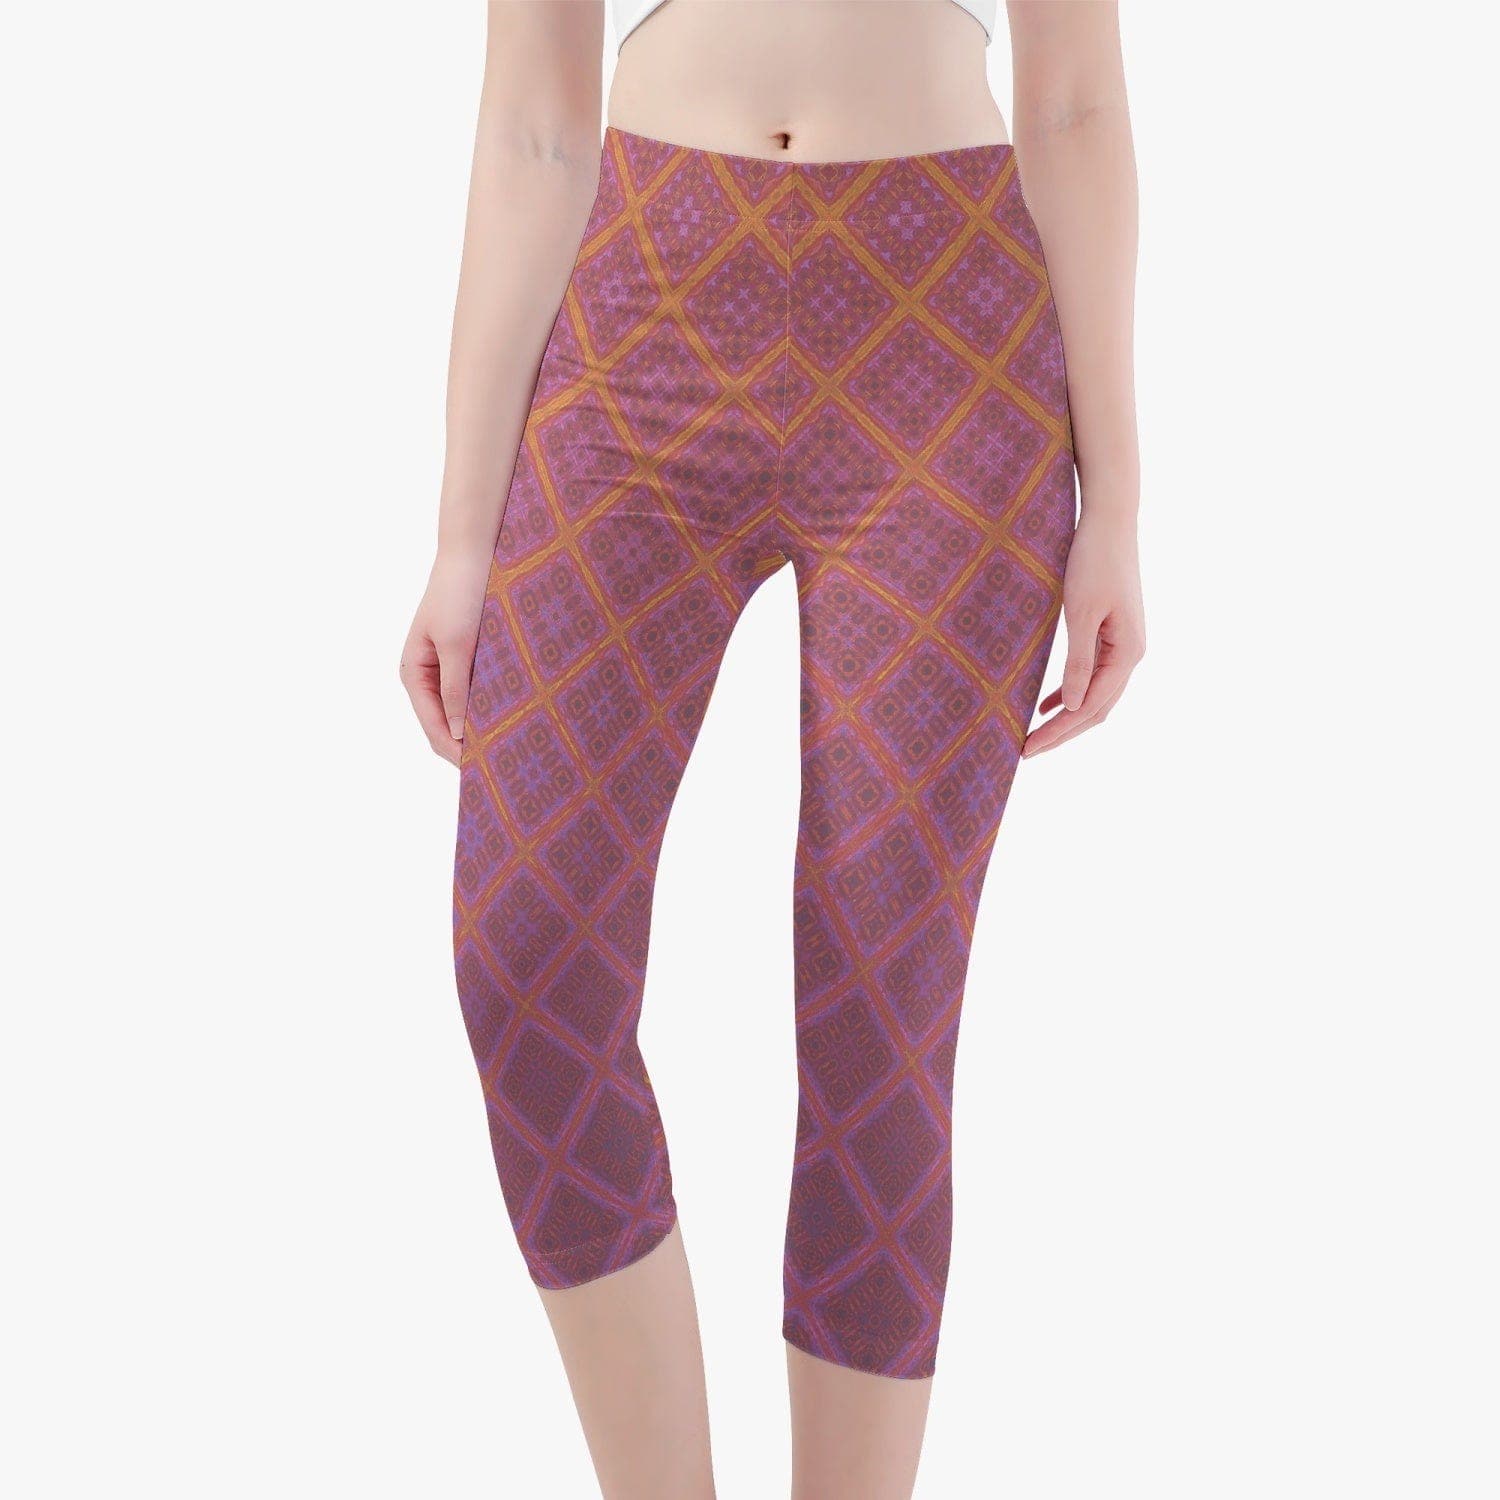 Skinny Fit Winter morning sun. 3/4 Yoga Pants/leggings by Sensus Studio Design